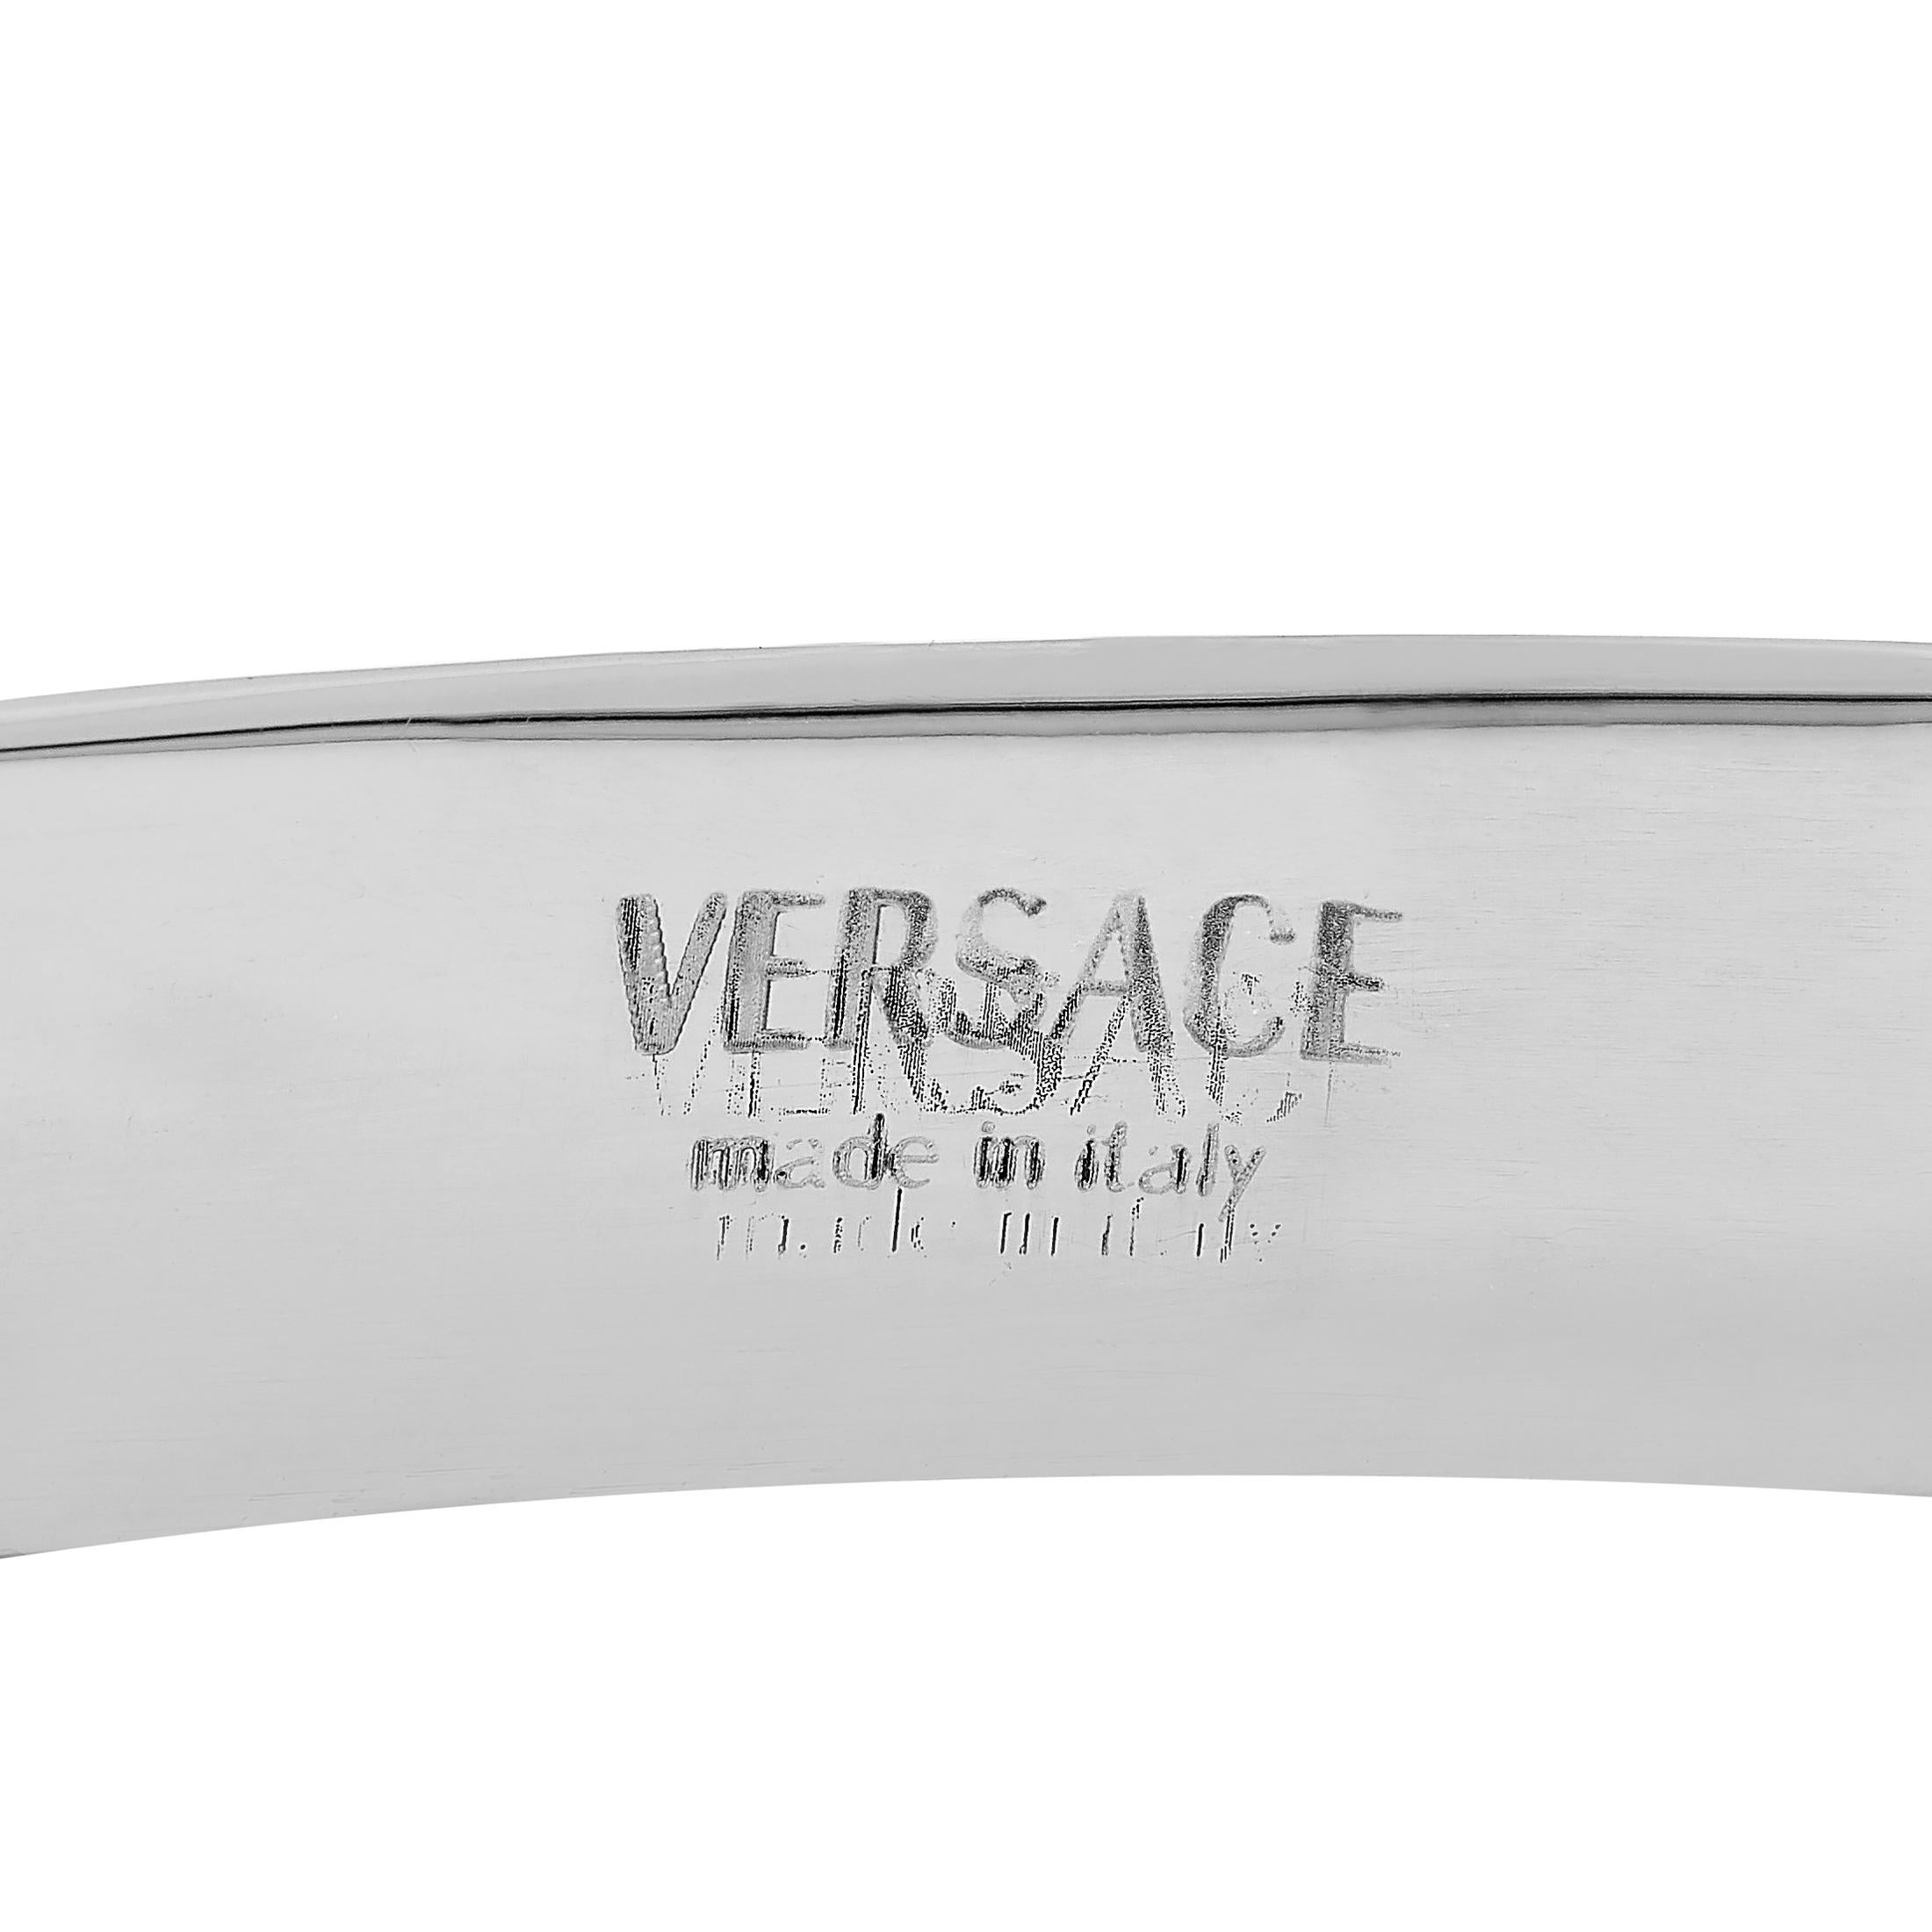 versace 18k gold bracelet